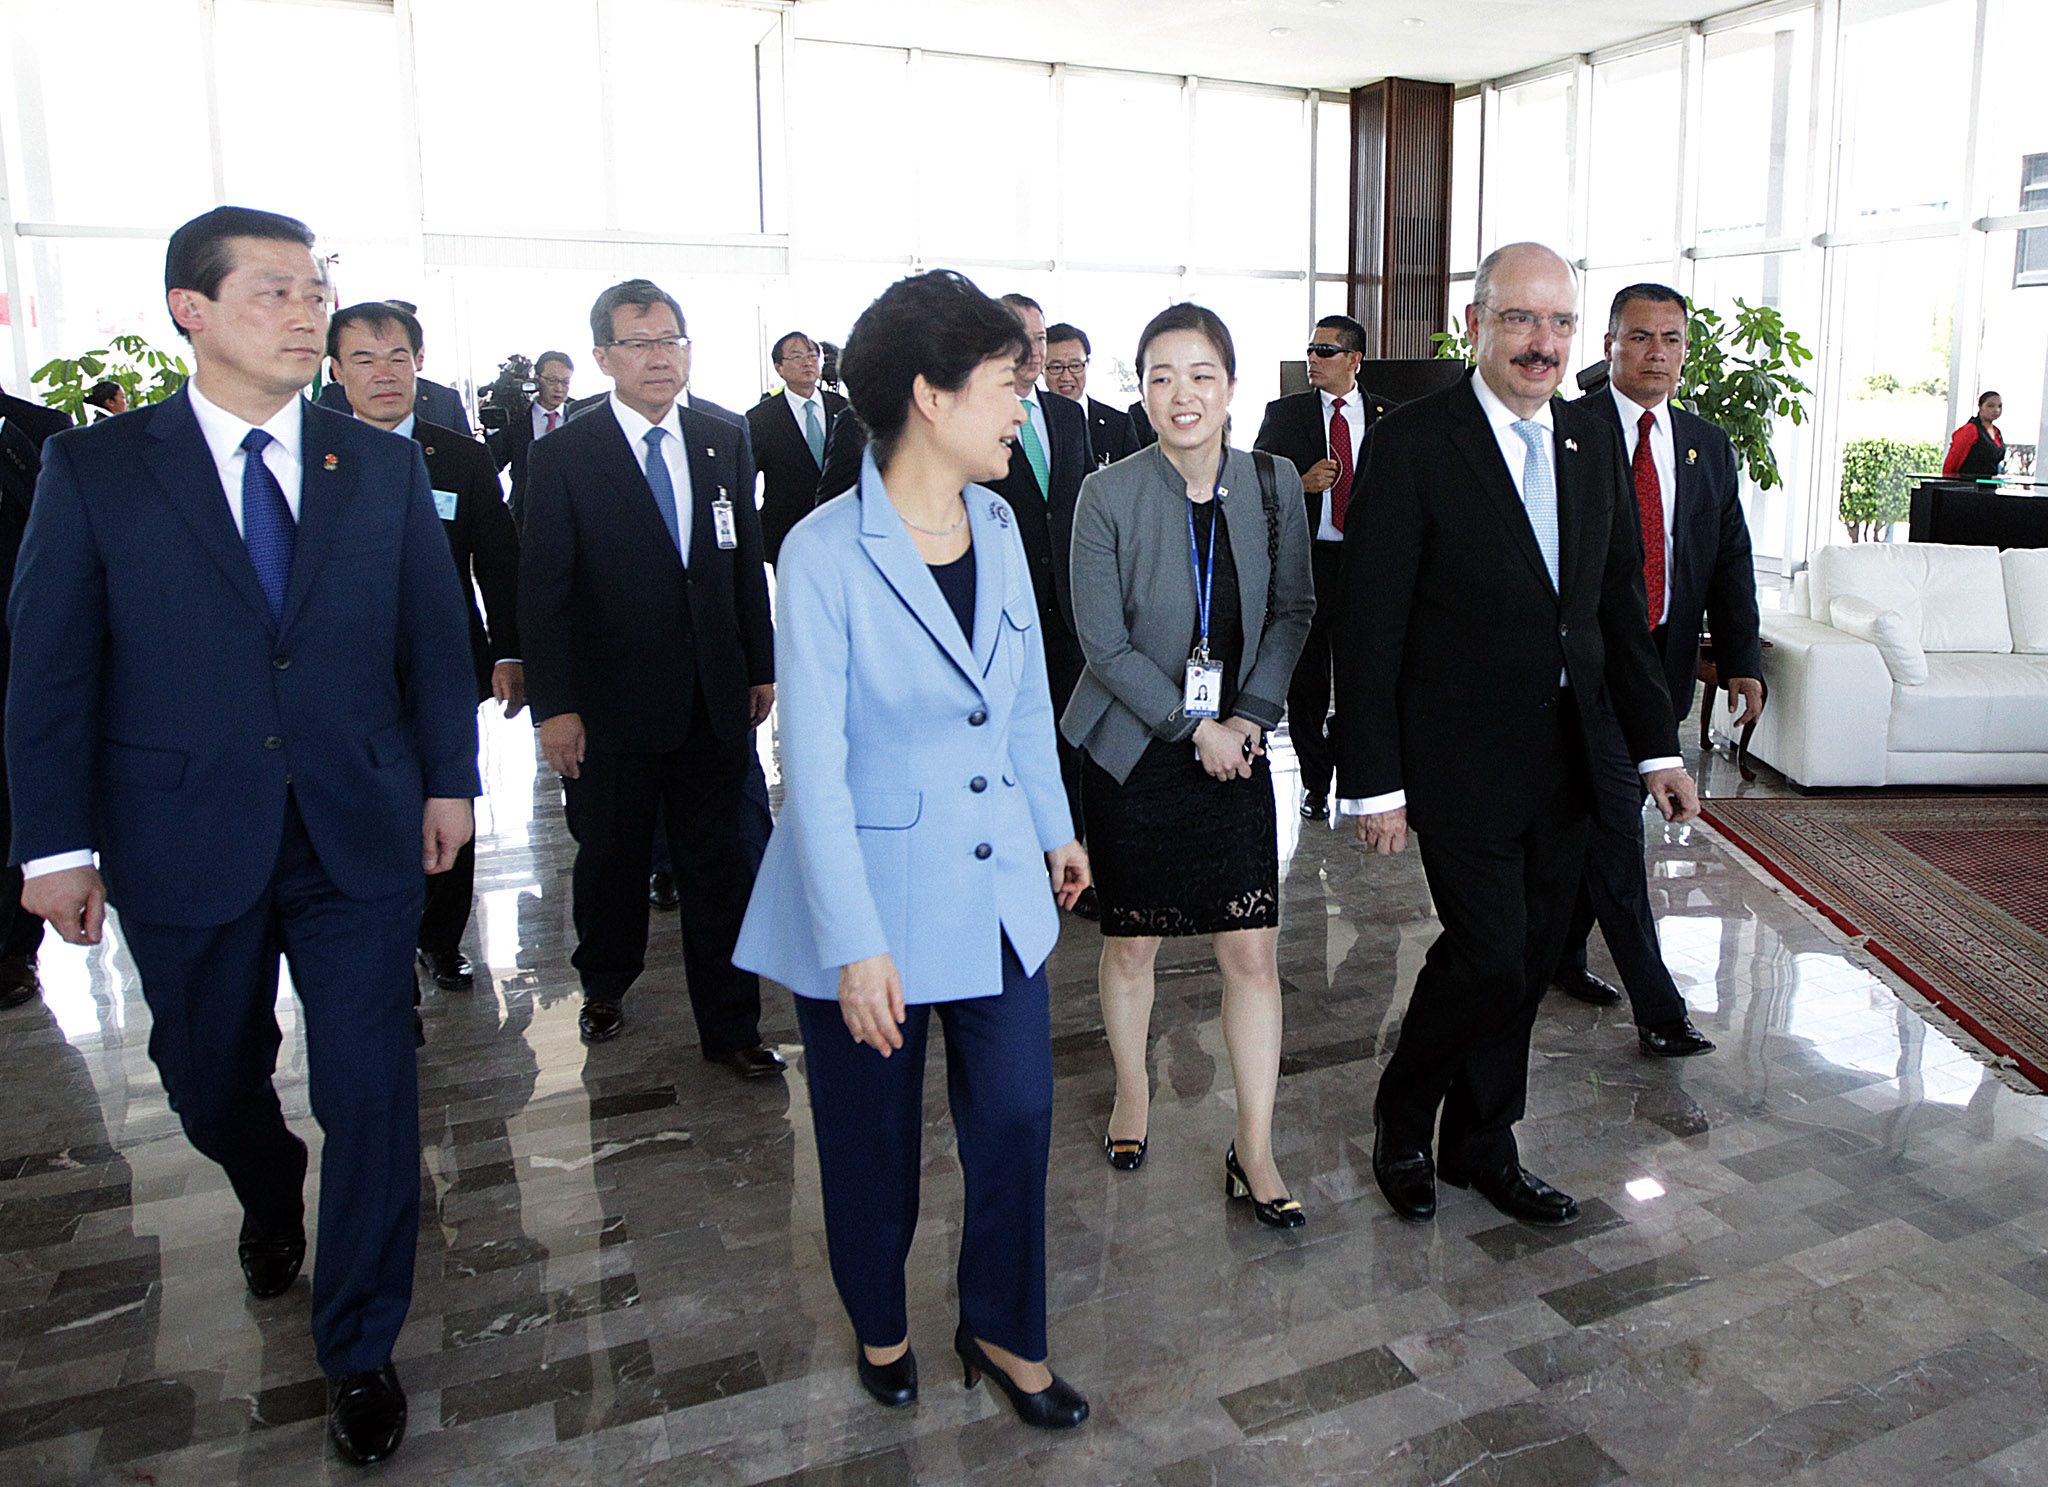 fOTO 4 Arribo de la Presidenta de la Rep blica de Corea  Excma Sra Park Geun hyejpg